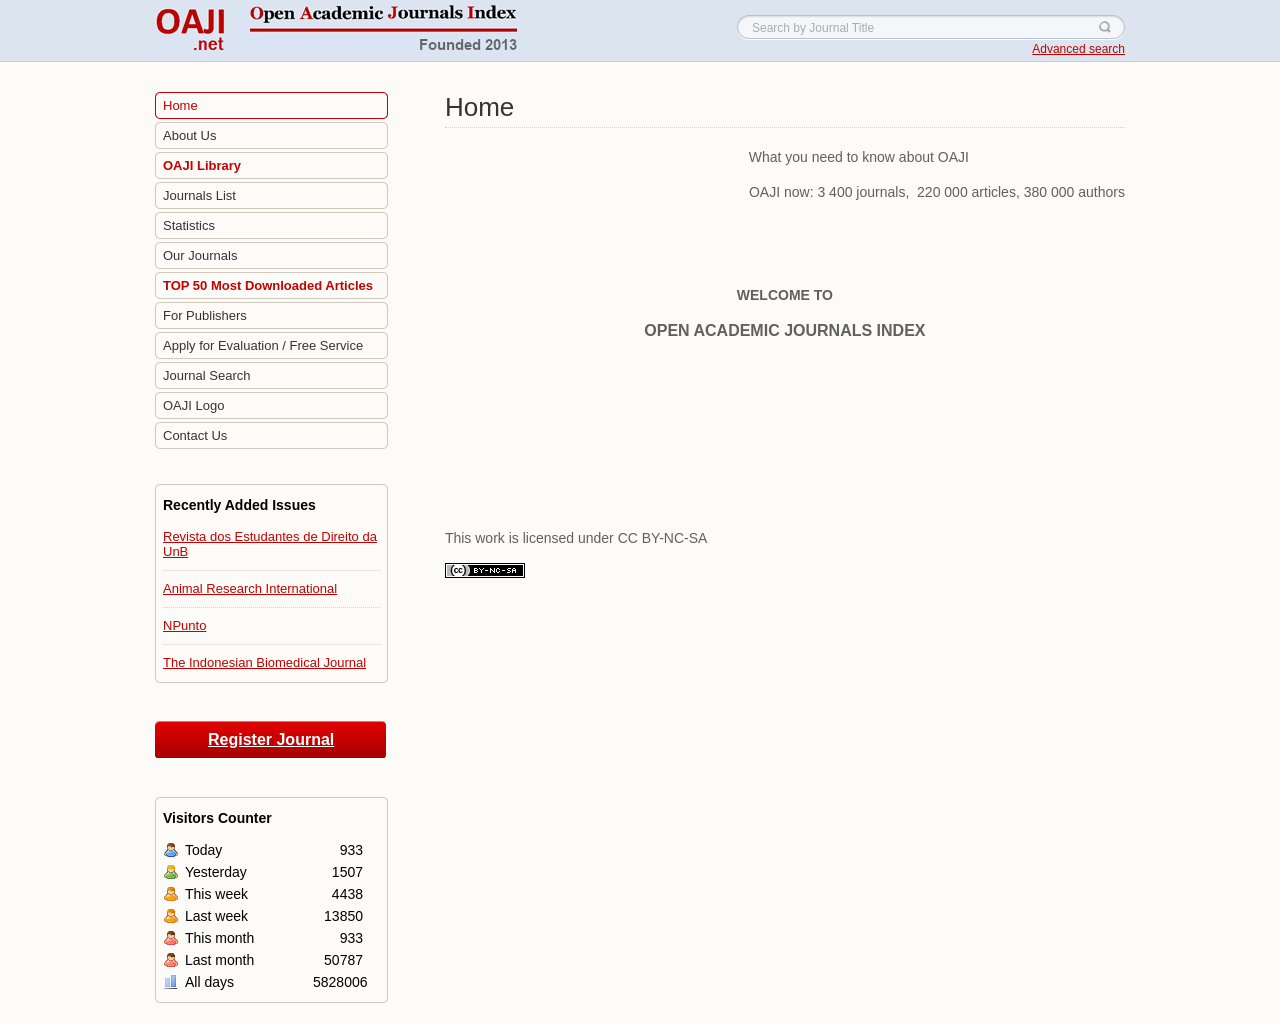 oaji.net